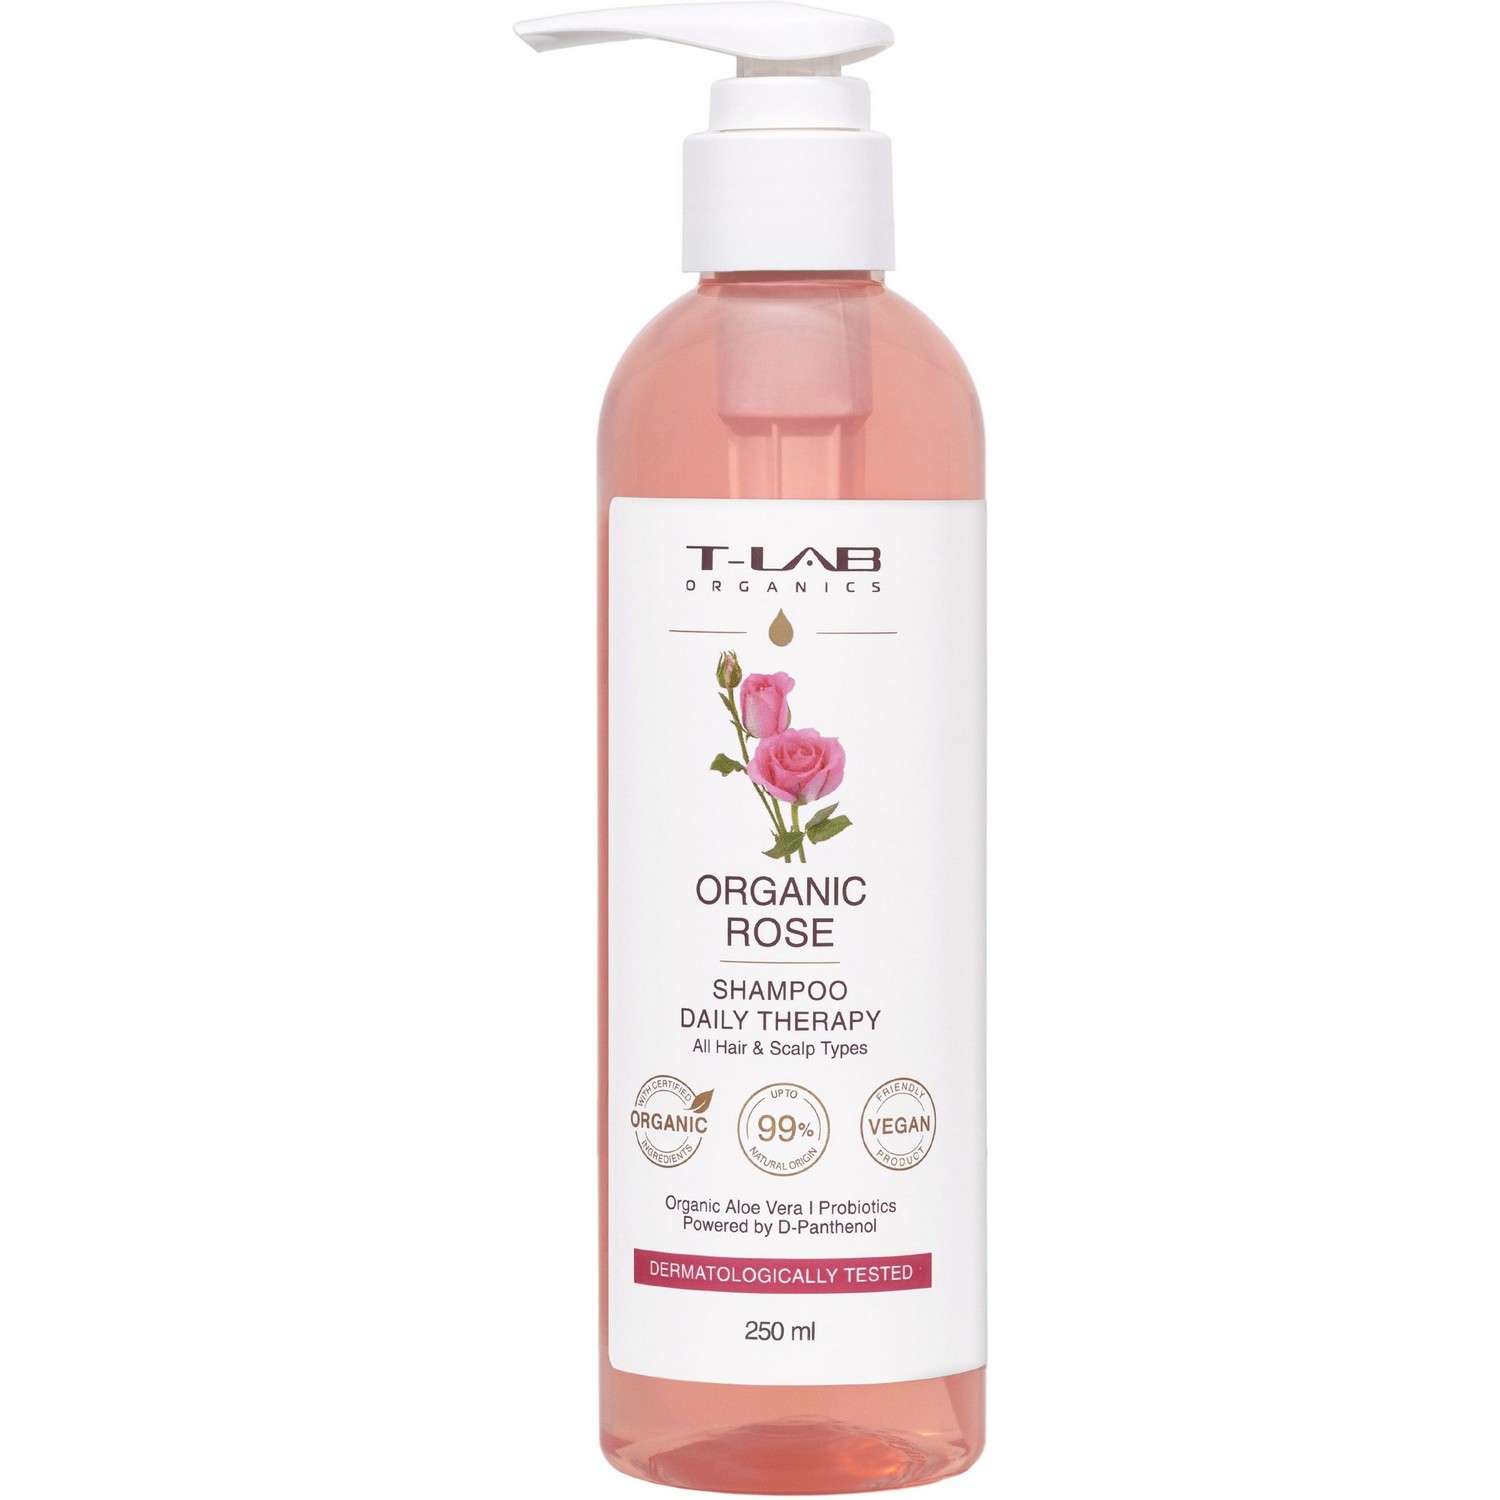 Шампунь T-LAB Organics Organic Rose Daily Therapy для догляду за будь-яким типом волосся, 250 мл - фото 1